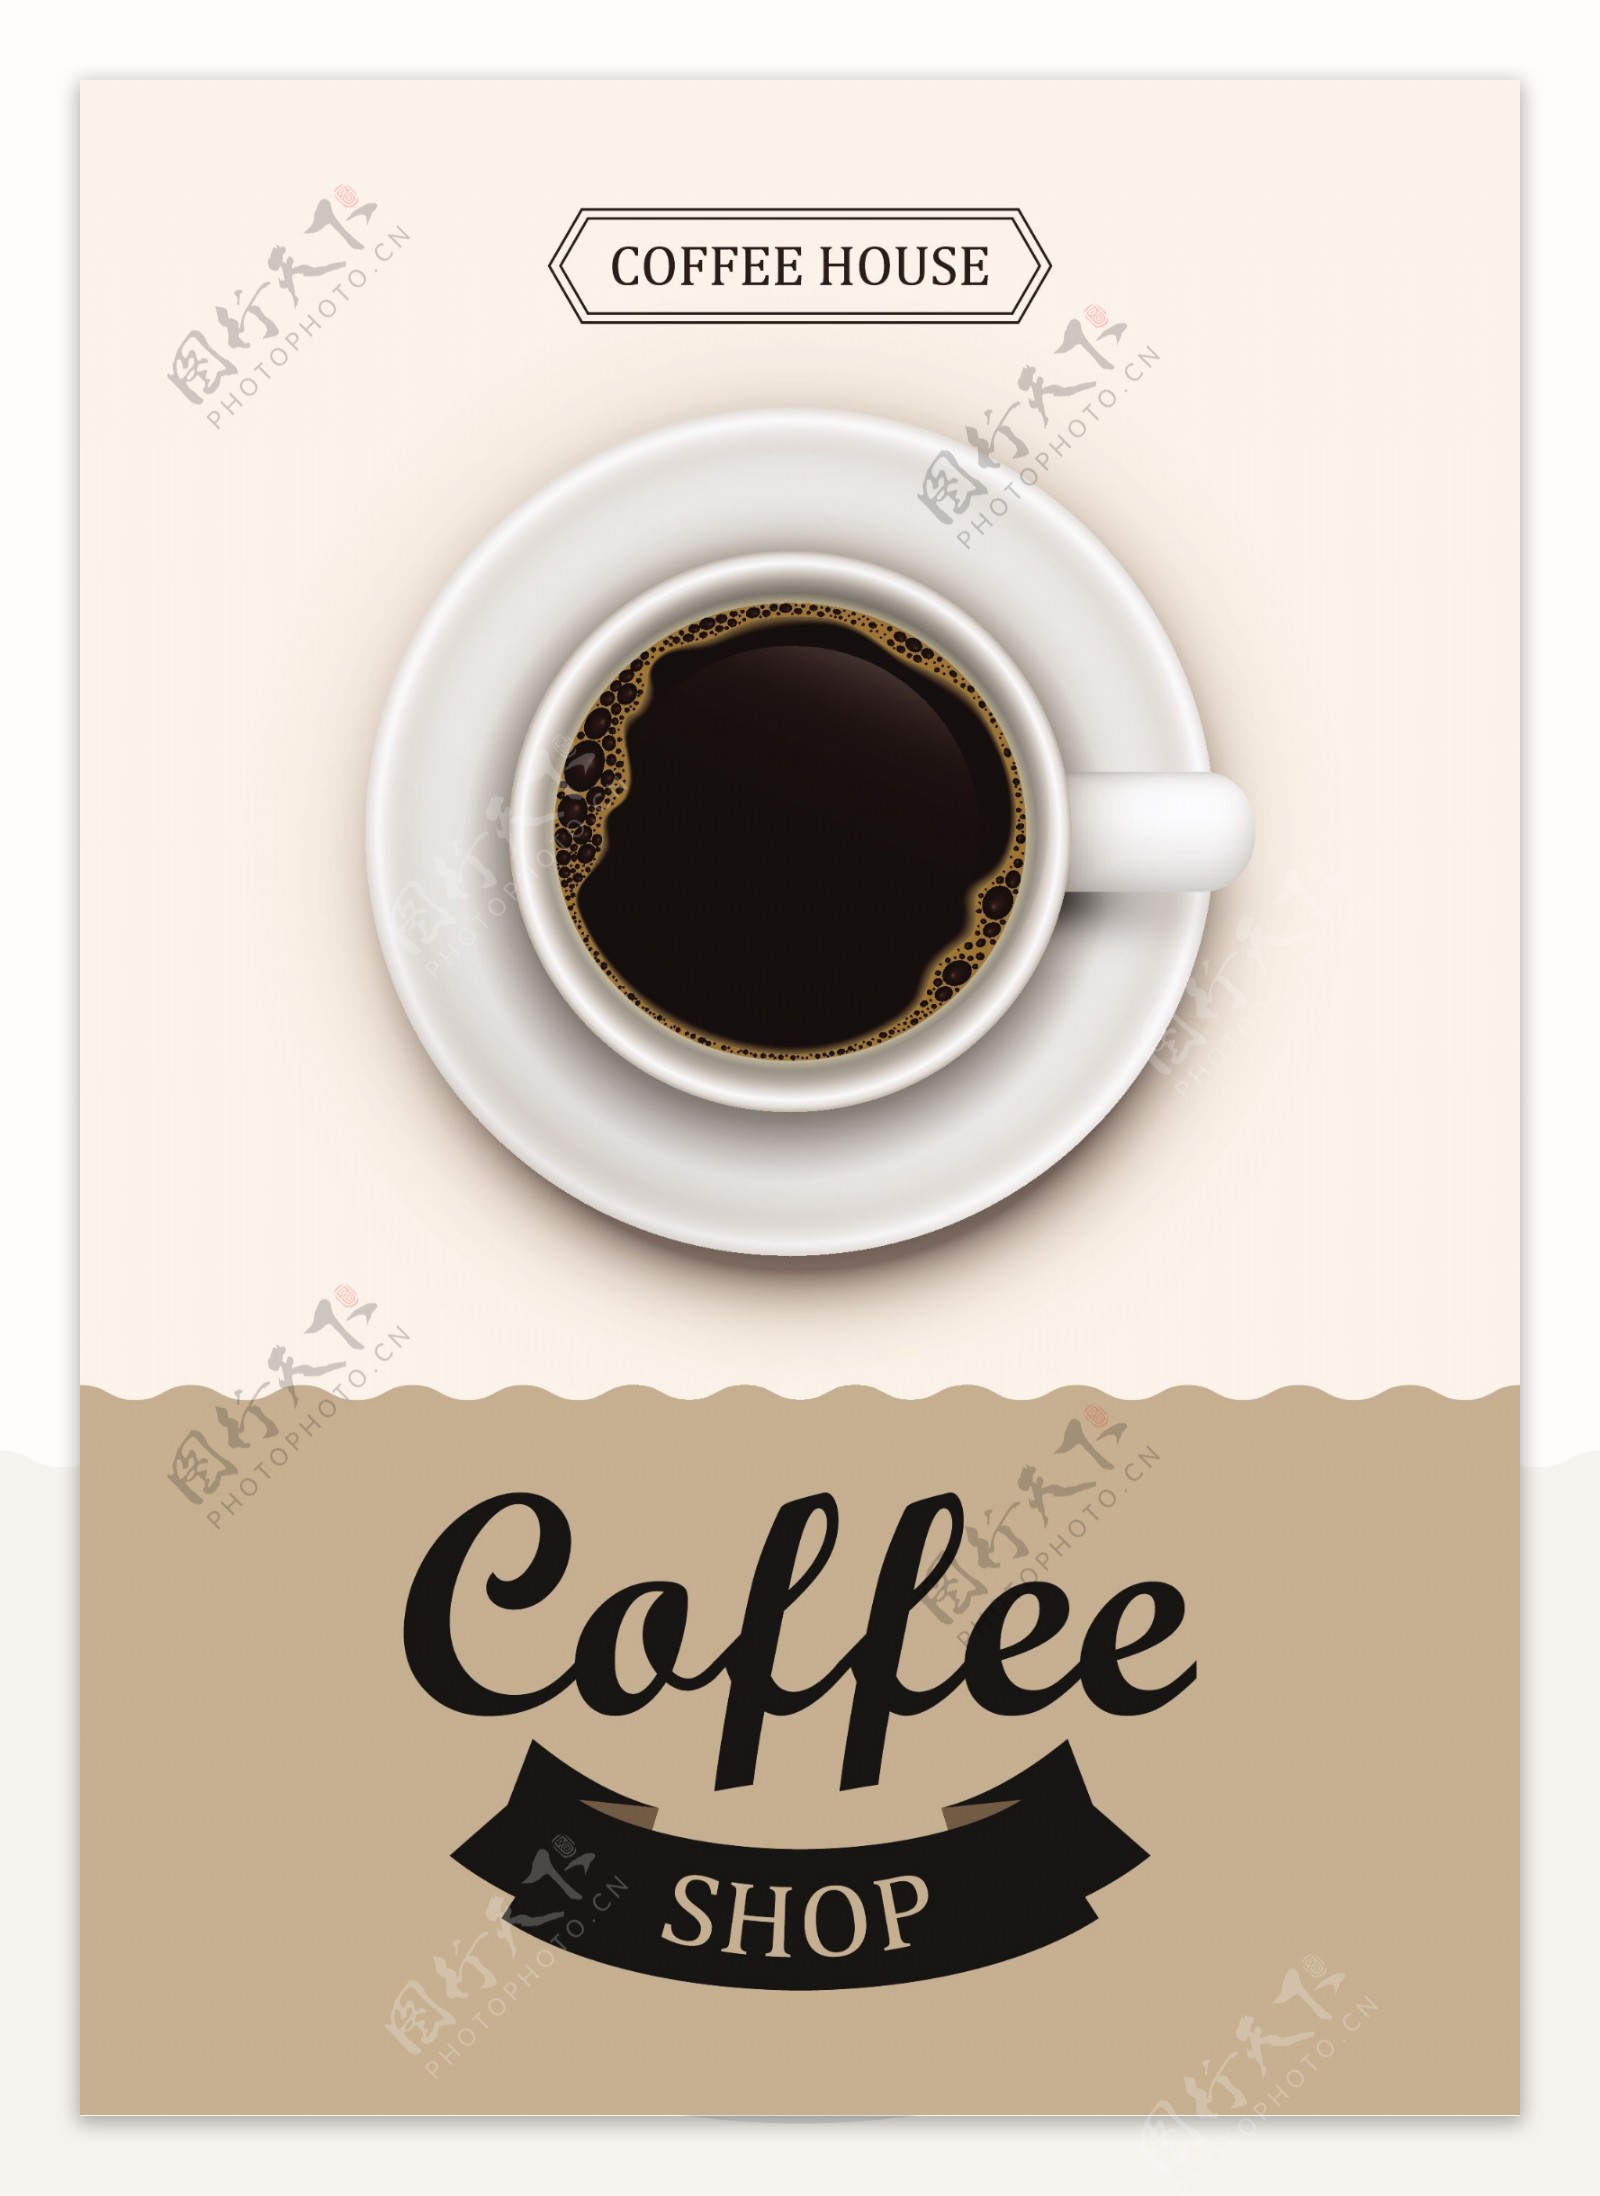 咖啡海报设计矢量素材